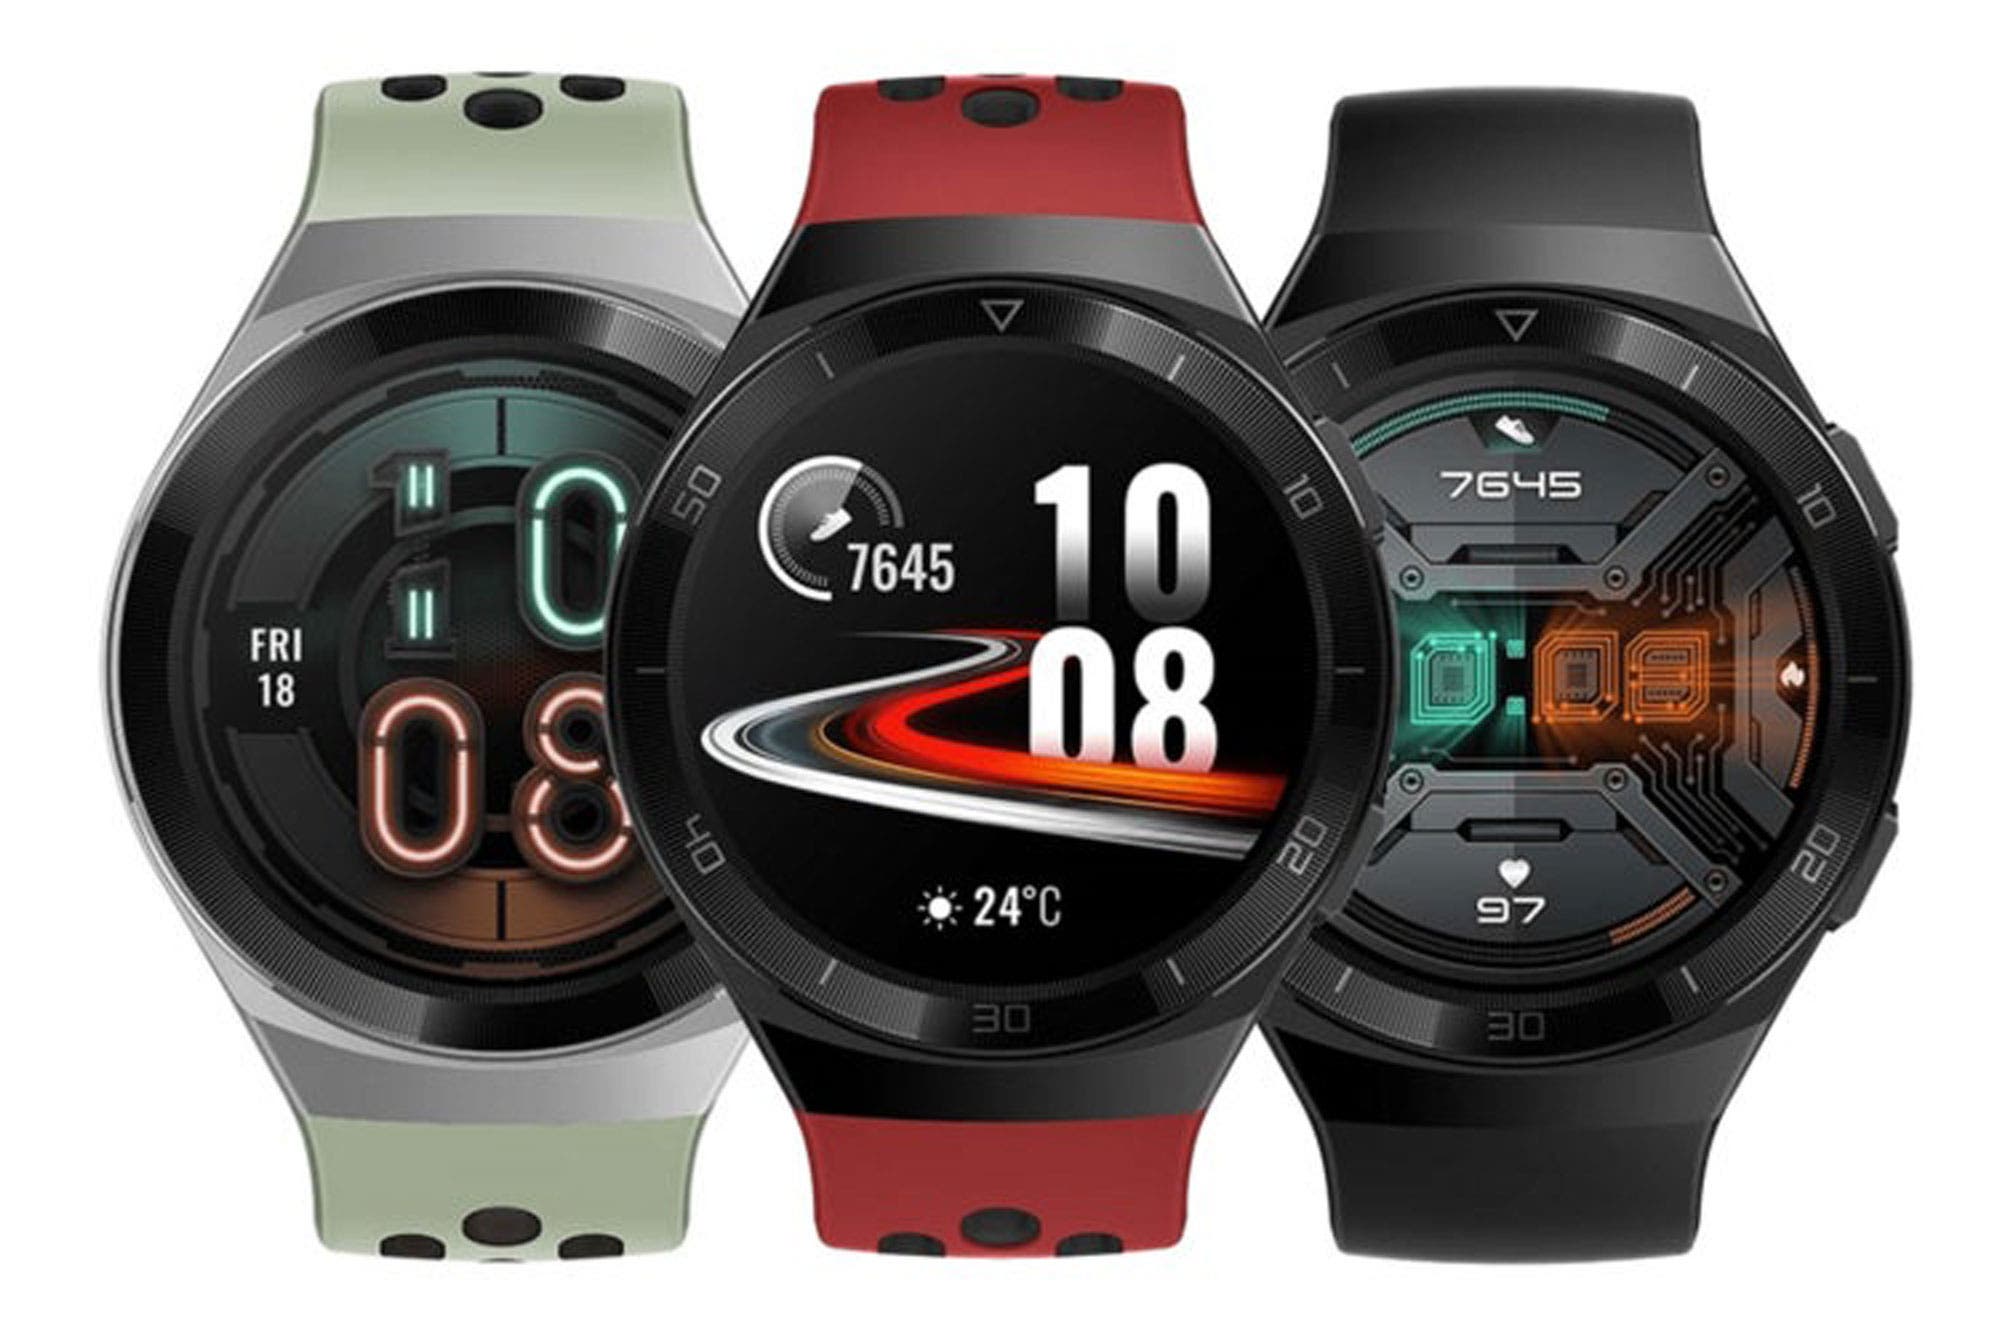 Часы GT 2e: Huawei выпускает новые умные часы с двухнедельной автономией